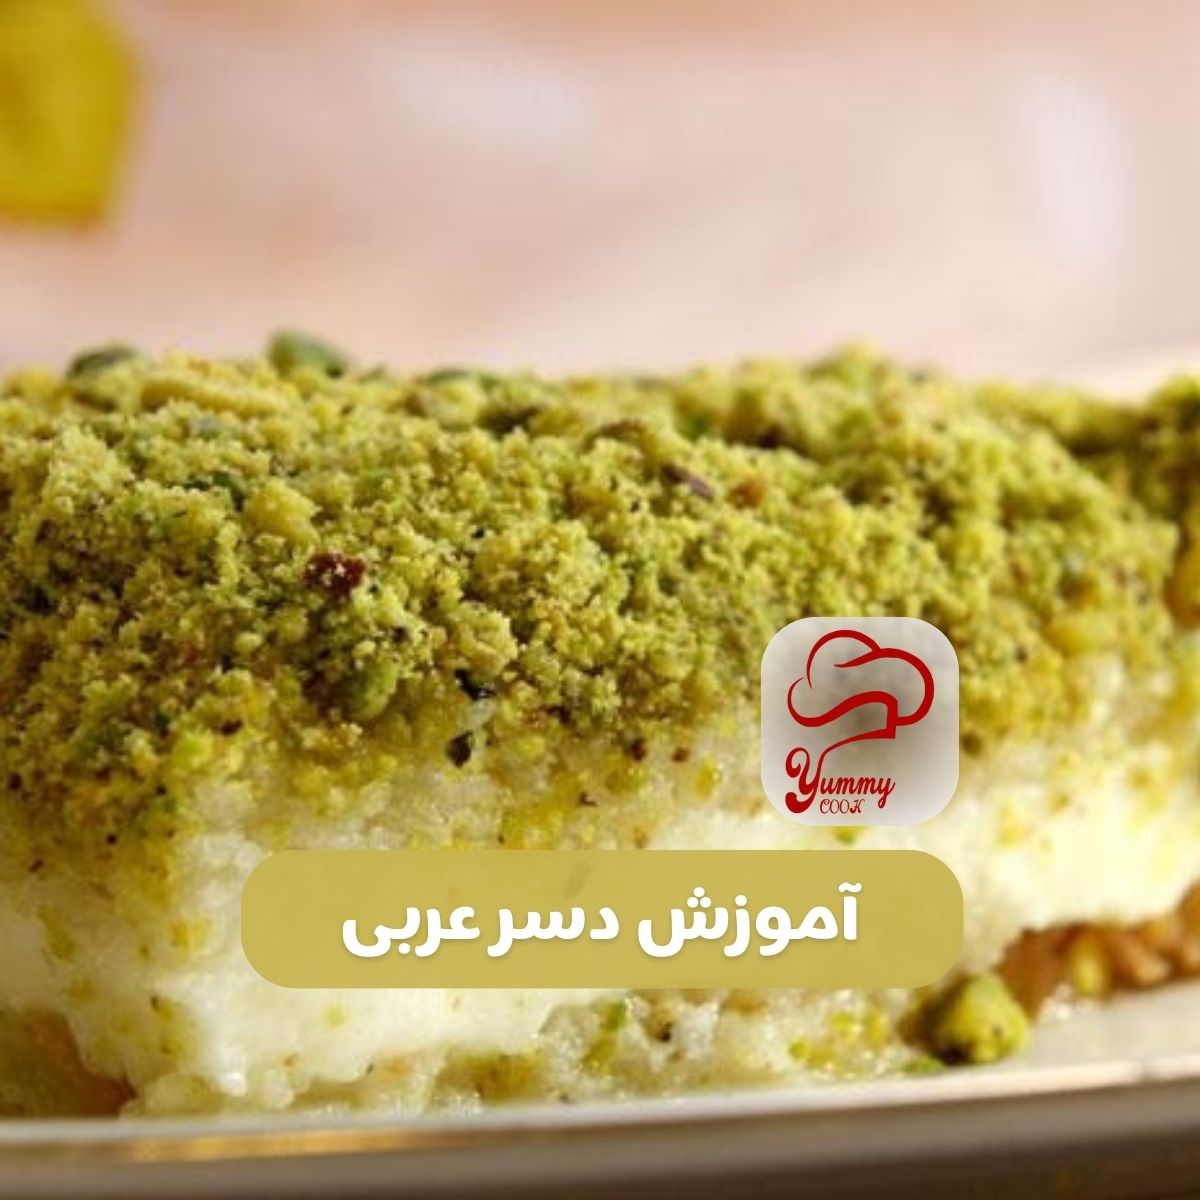 آموزش آشپزی سنتی - طرز تهیه دسر عربی - یامی کوک